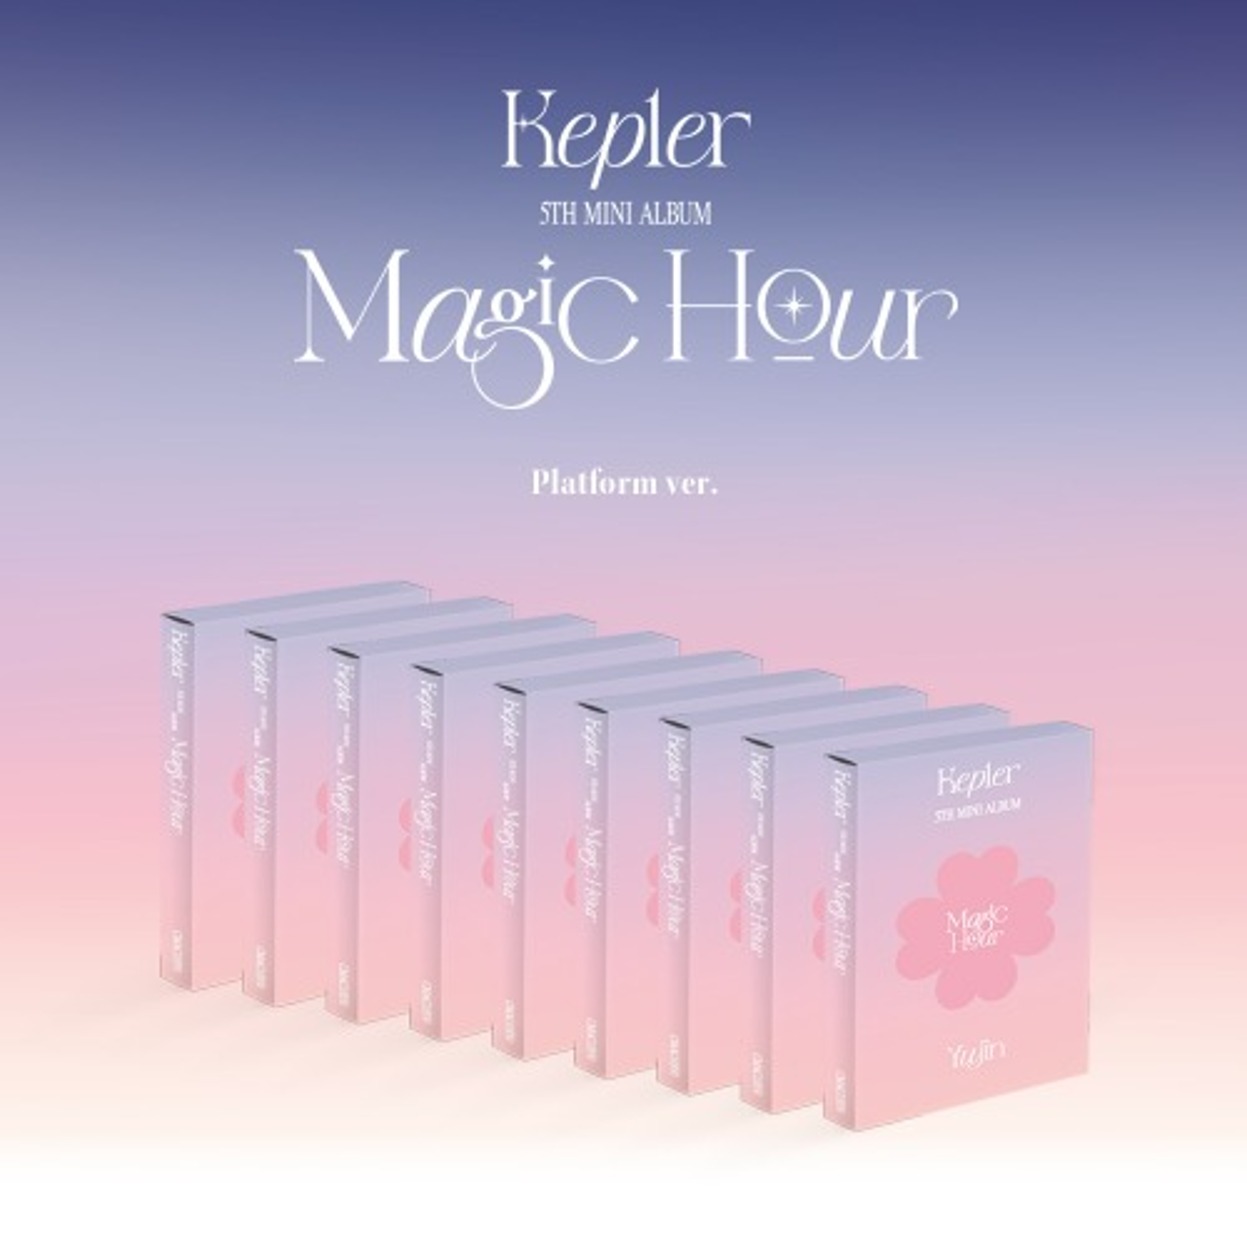 케플러 (Kep1er) - 미니앨범 5집 [Magic Hour] (Platform ver.) (랜덤버전)